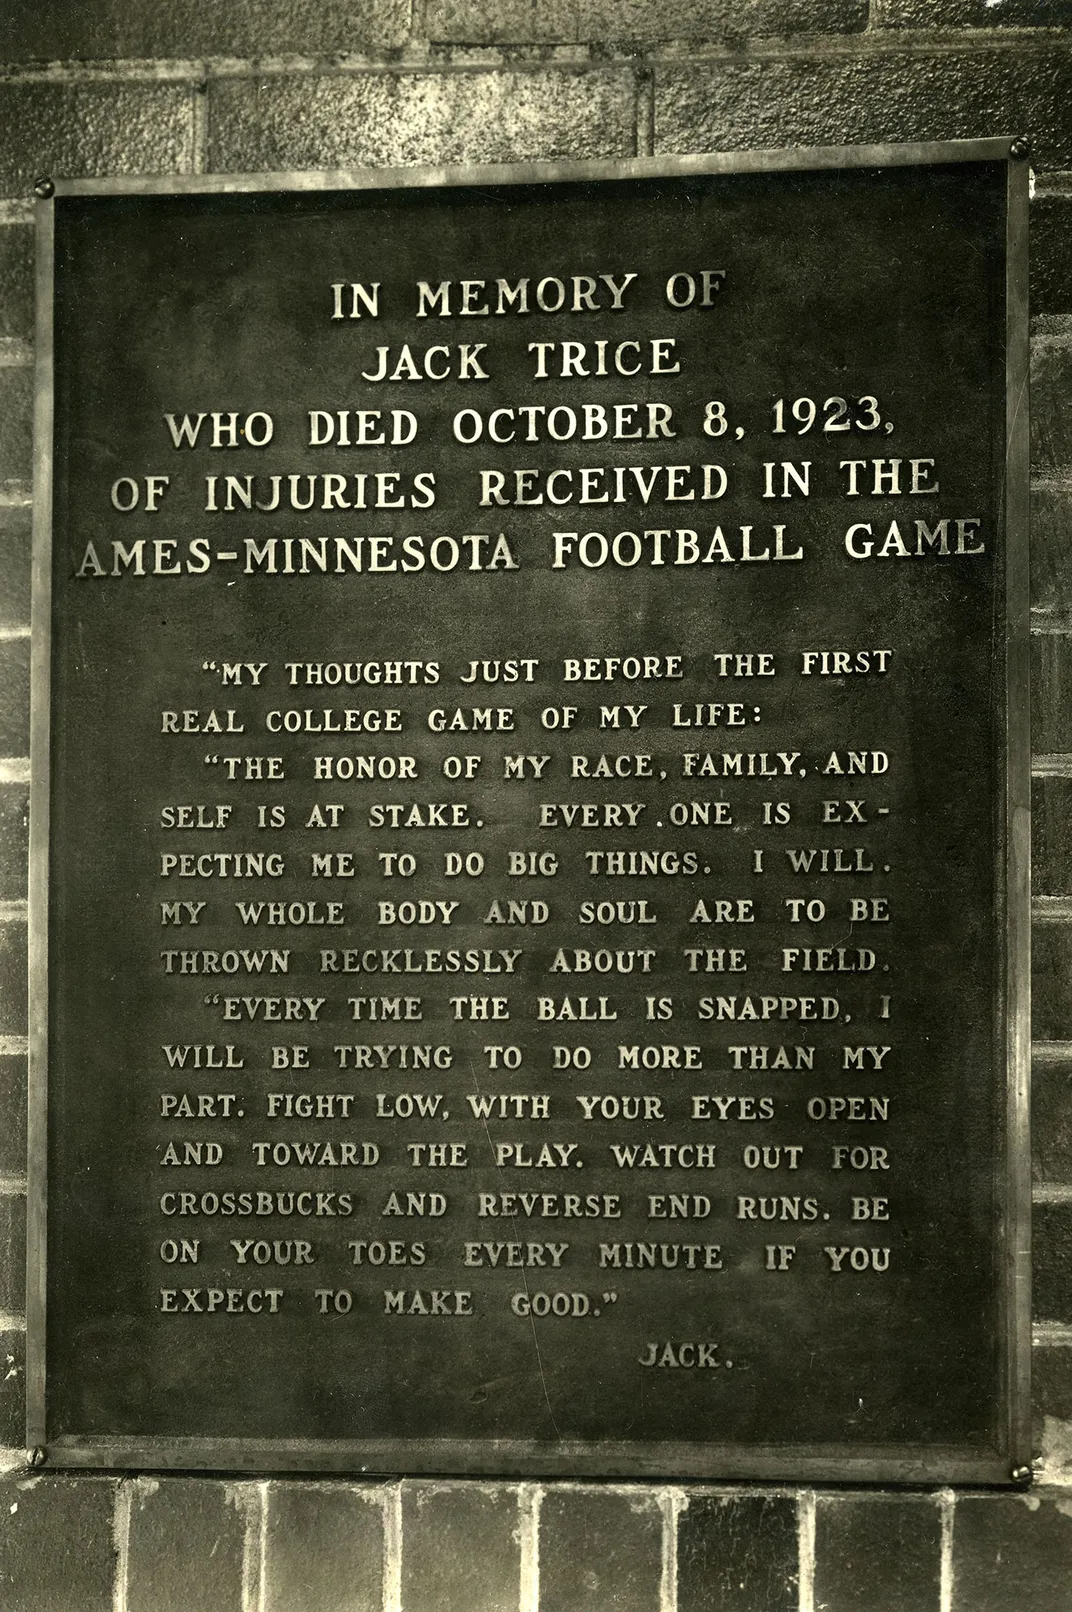 A memorial plaque commemorating Trice